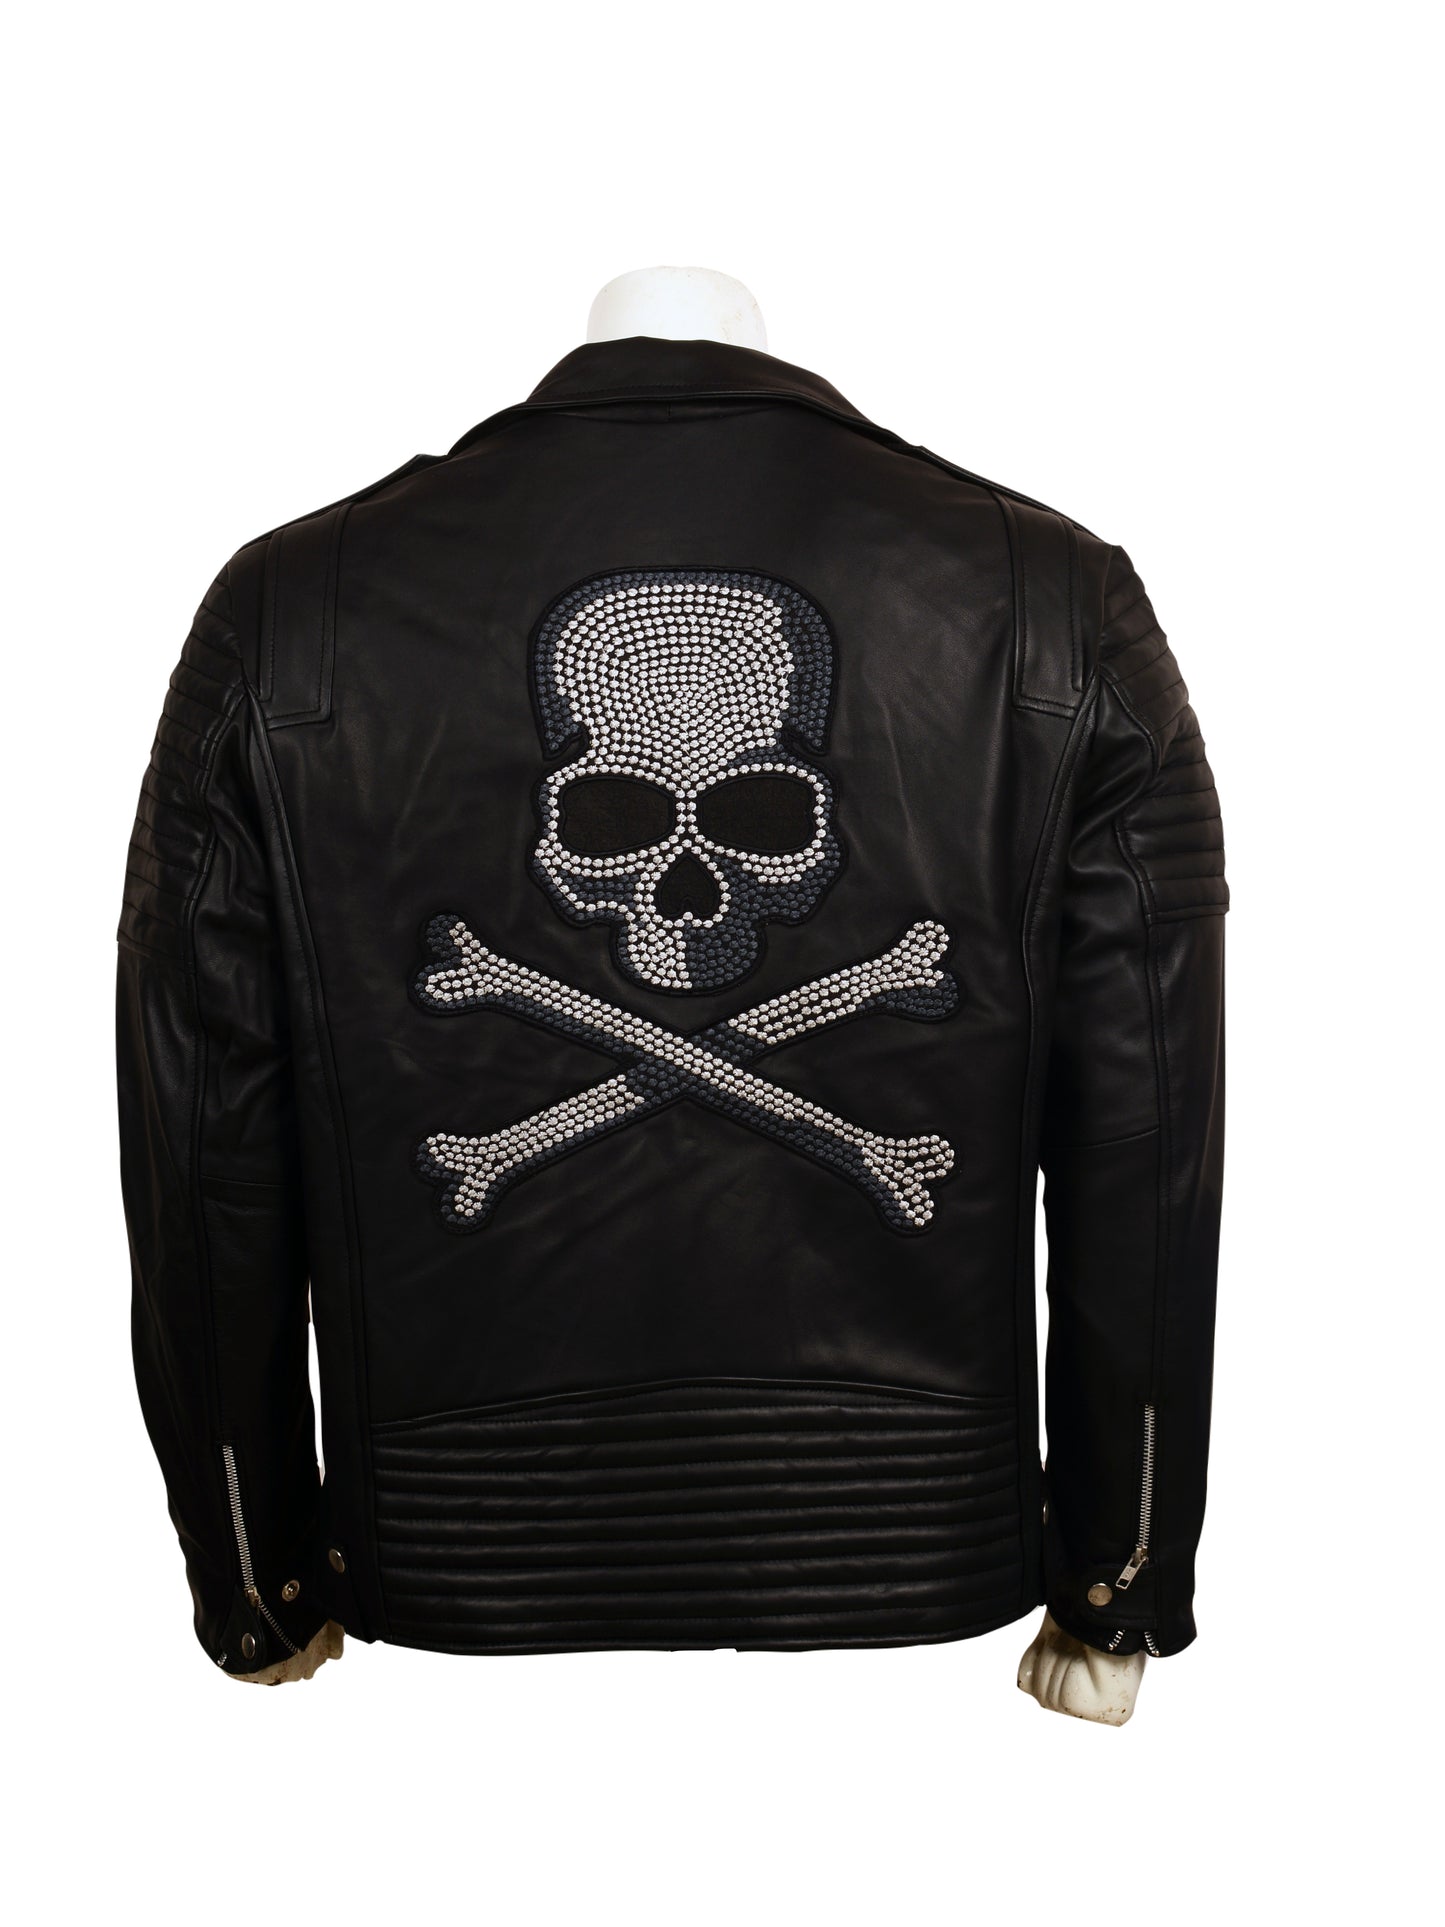 Skull Embroidered Black Leather Biker Jacket